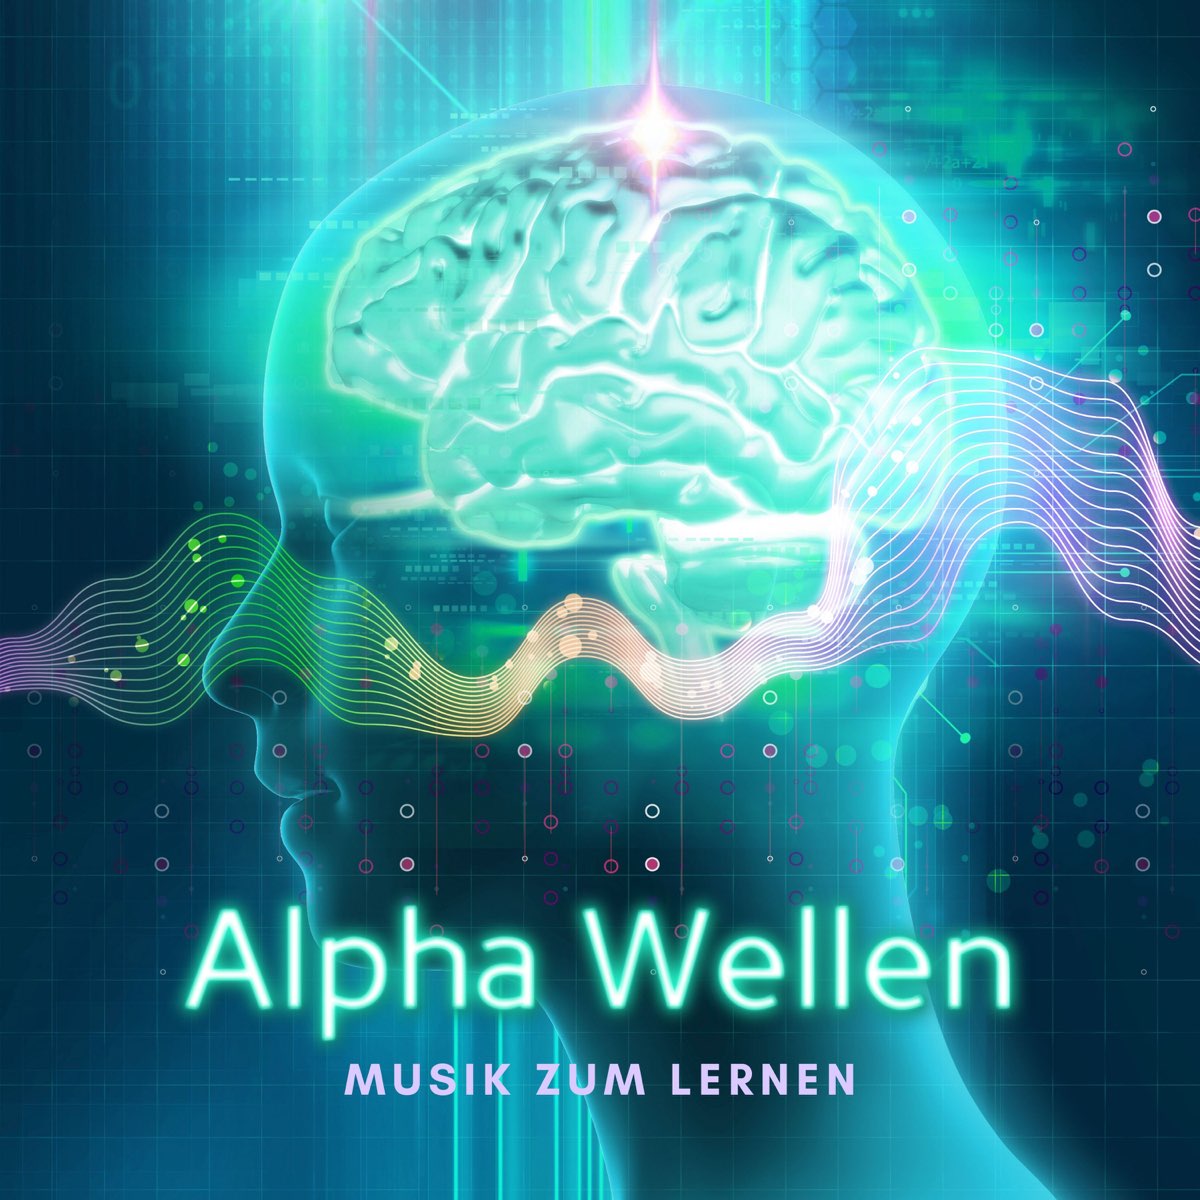 Alpha Wellen Musik zum Lernen – Schöne Musik zum Konzentrieren, Alphawellen  für mehr Leistung - Album by Wellen Akademie - Apple Music